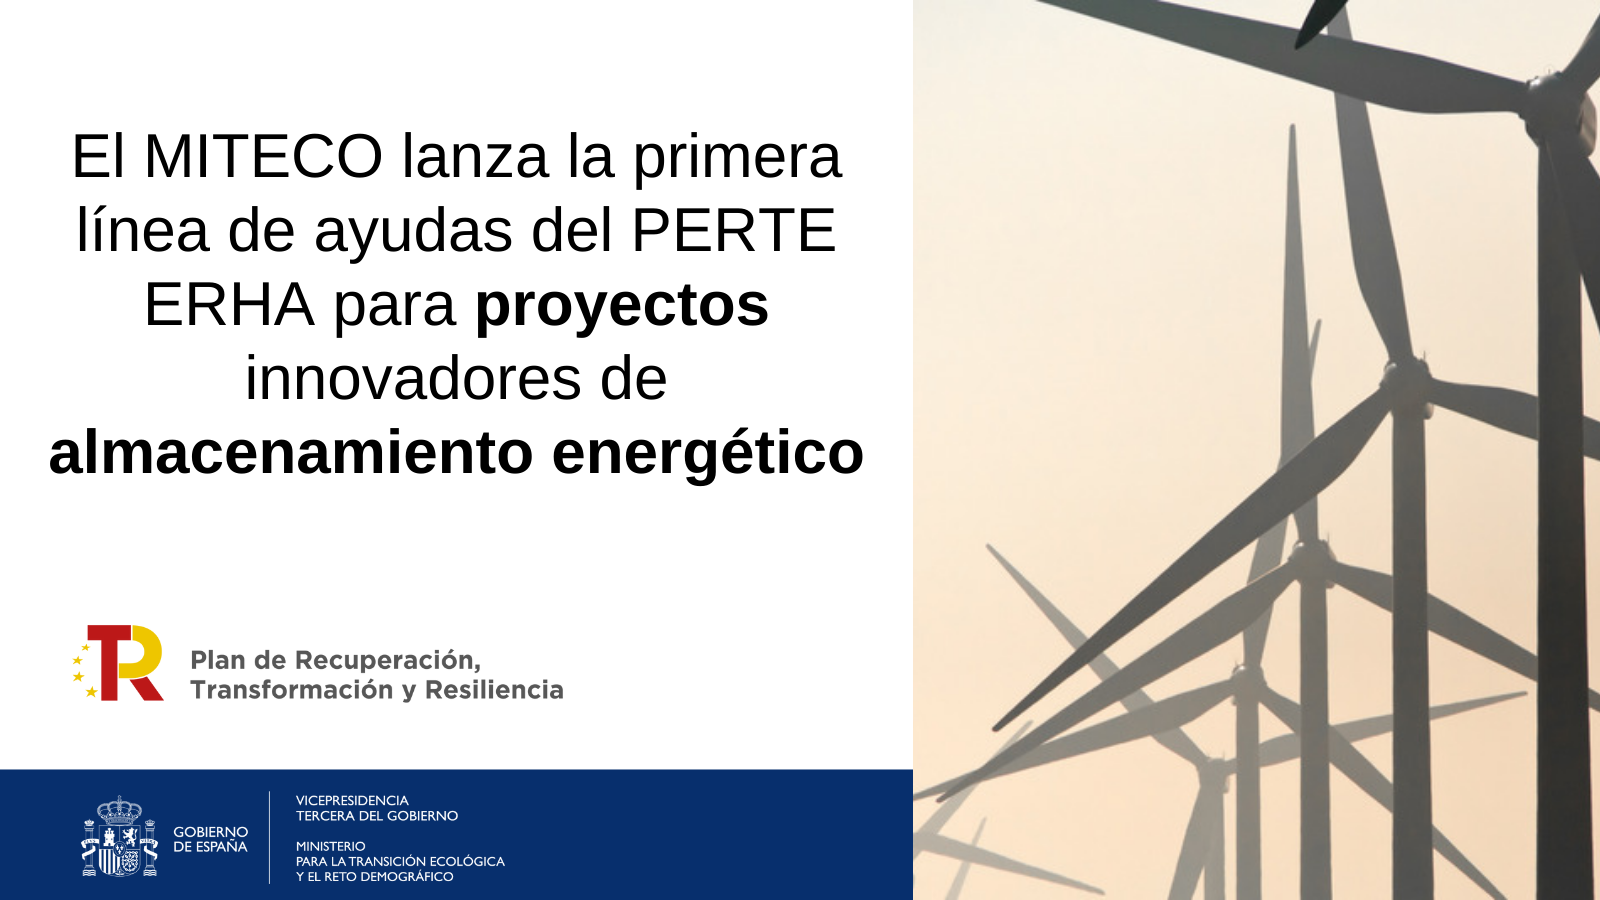  PERTE EHRA almacenamiento energeticoEl MITECO lanza la primera línea de ayudas del PERTE ERHA para proyectos innovadores de almacenamiento energético 